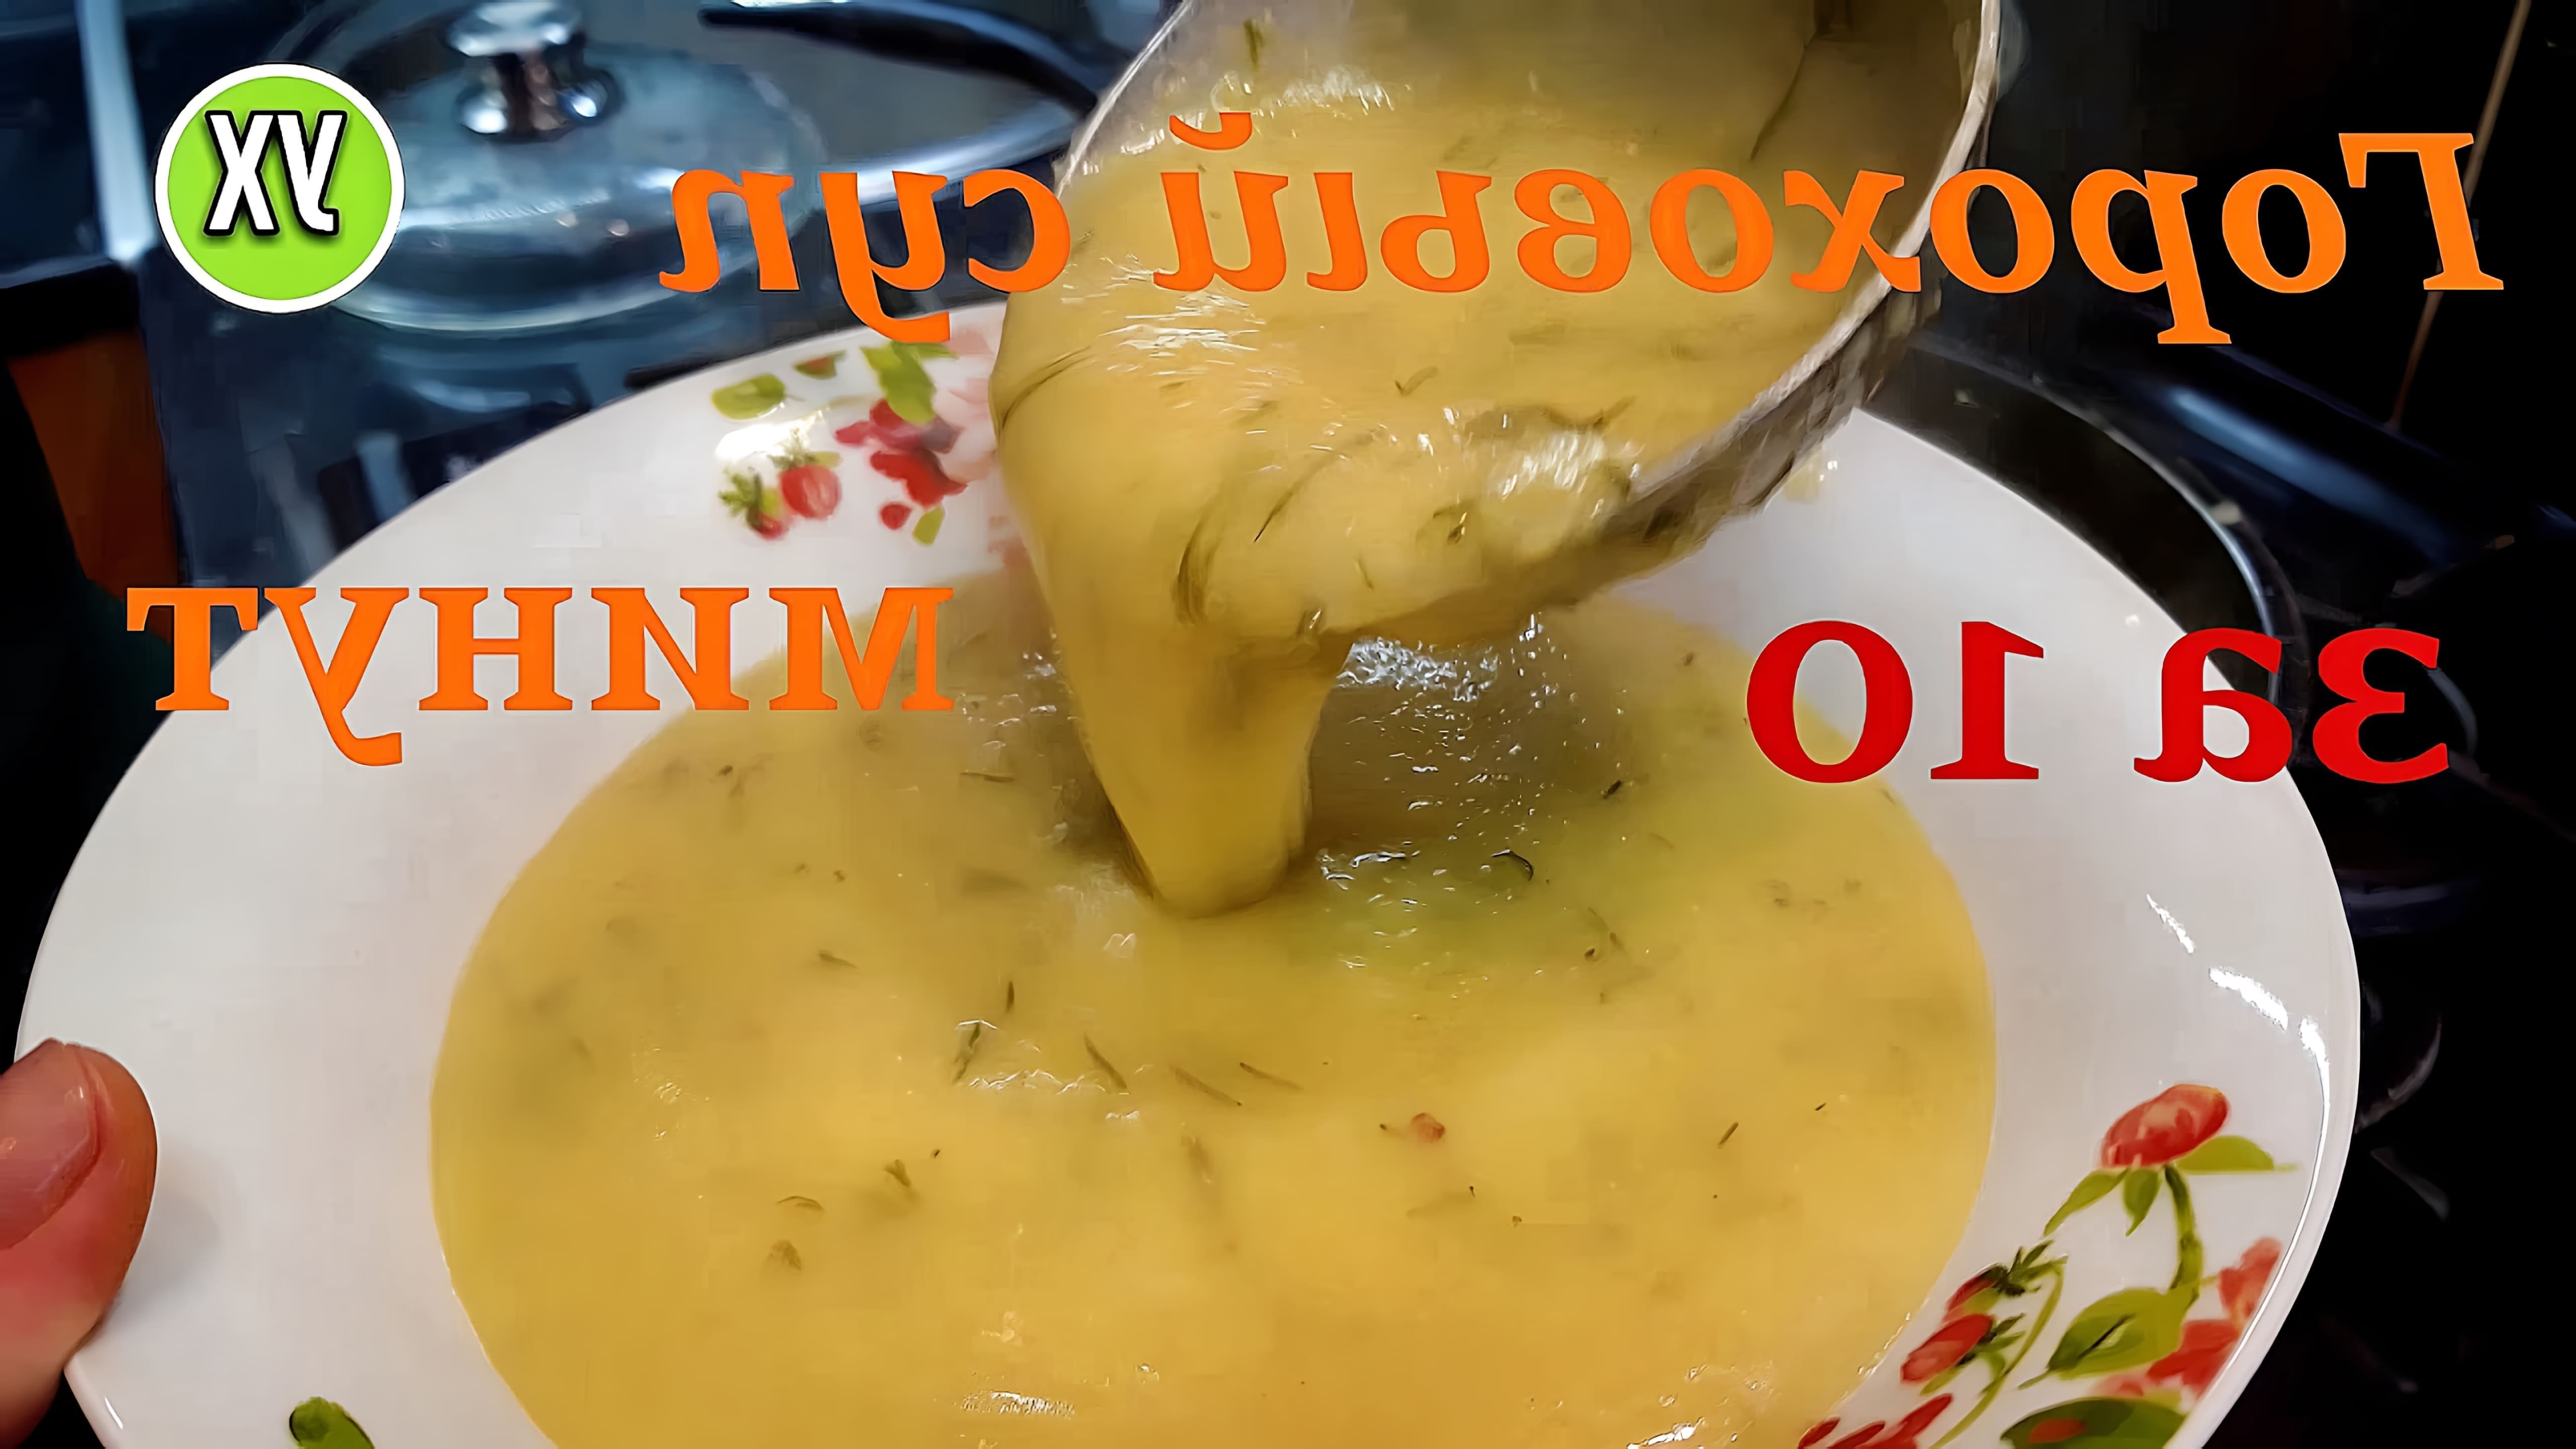 В этом видео демонстрируется рецепт приготовления горохового супа или каши за 10 минут